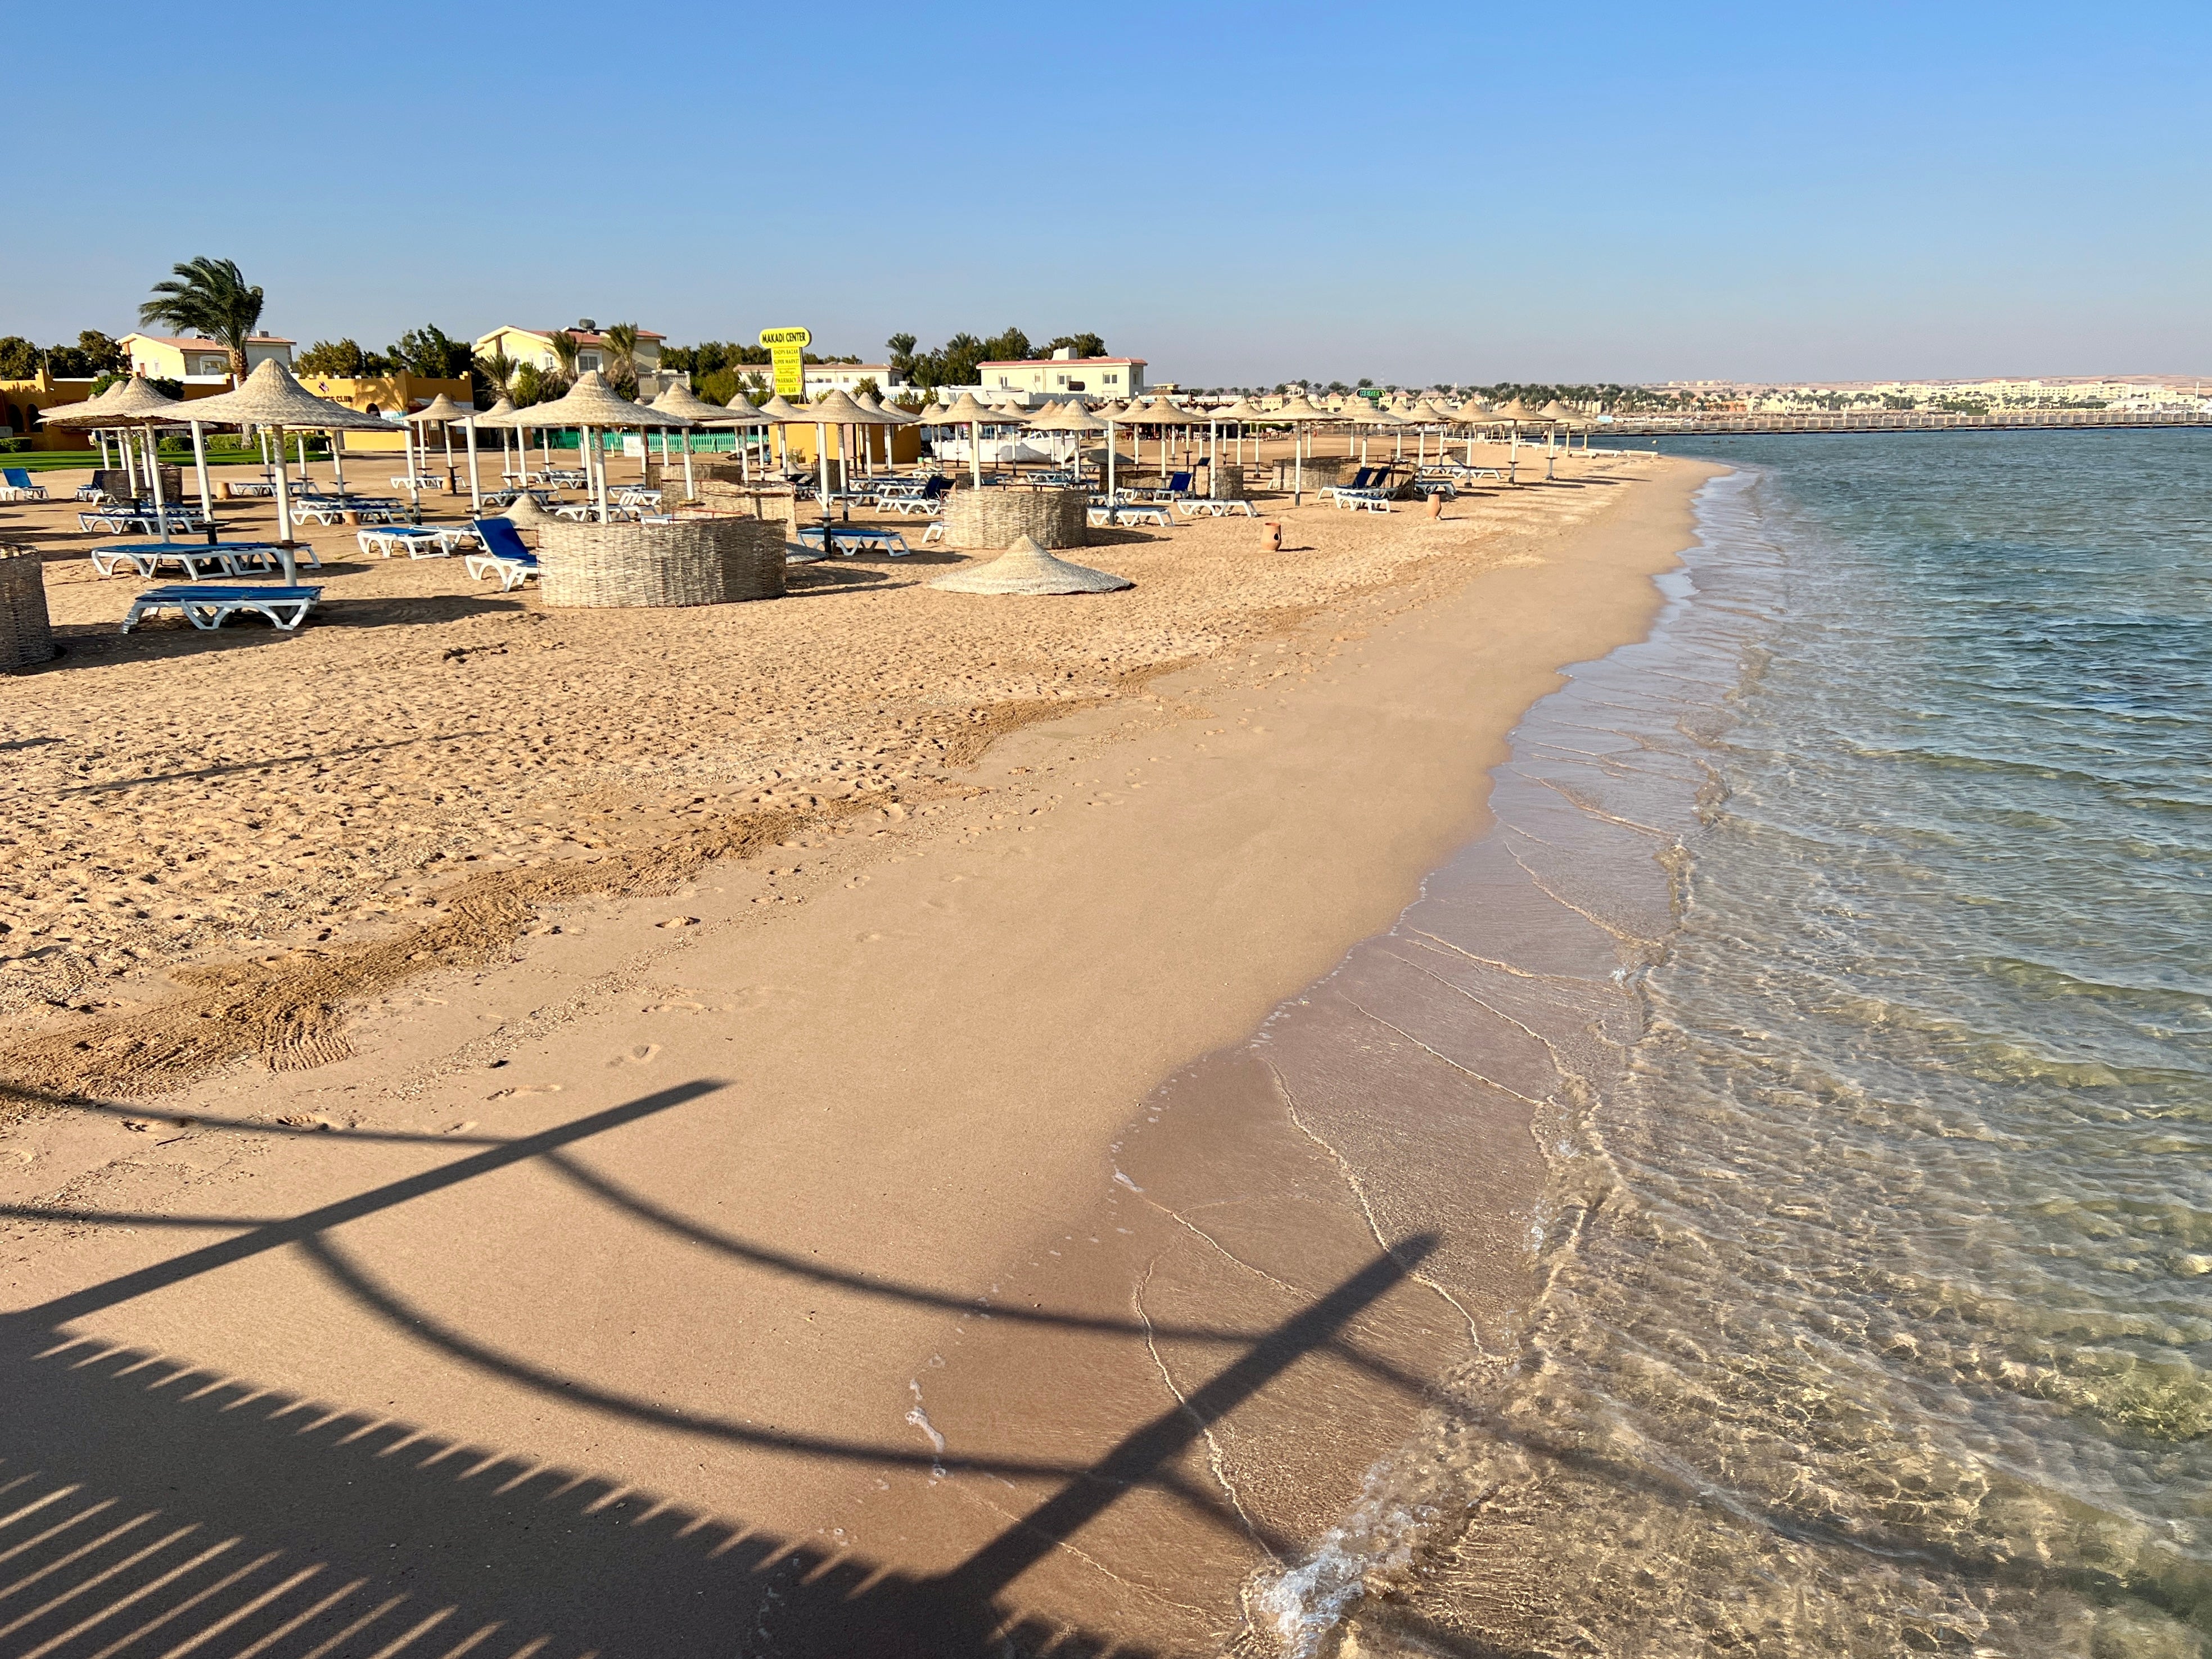 Shore bet: the beach at Makadi Bay on Egypt’s Red Sea coast